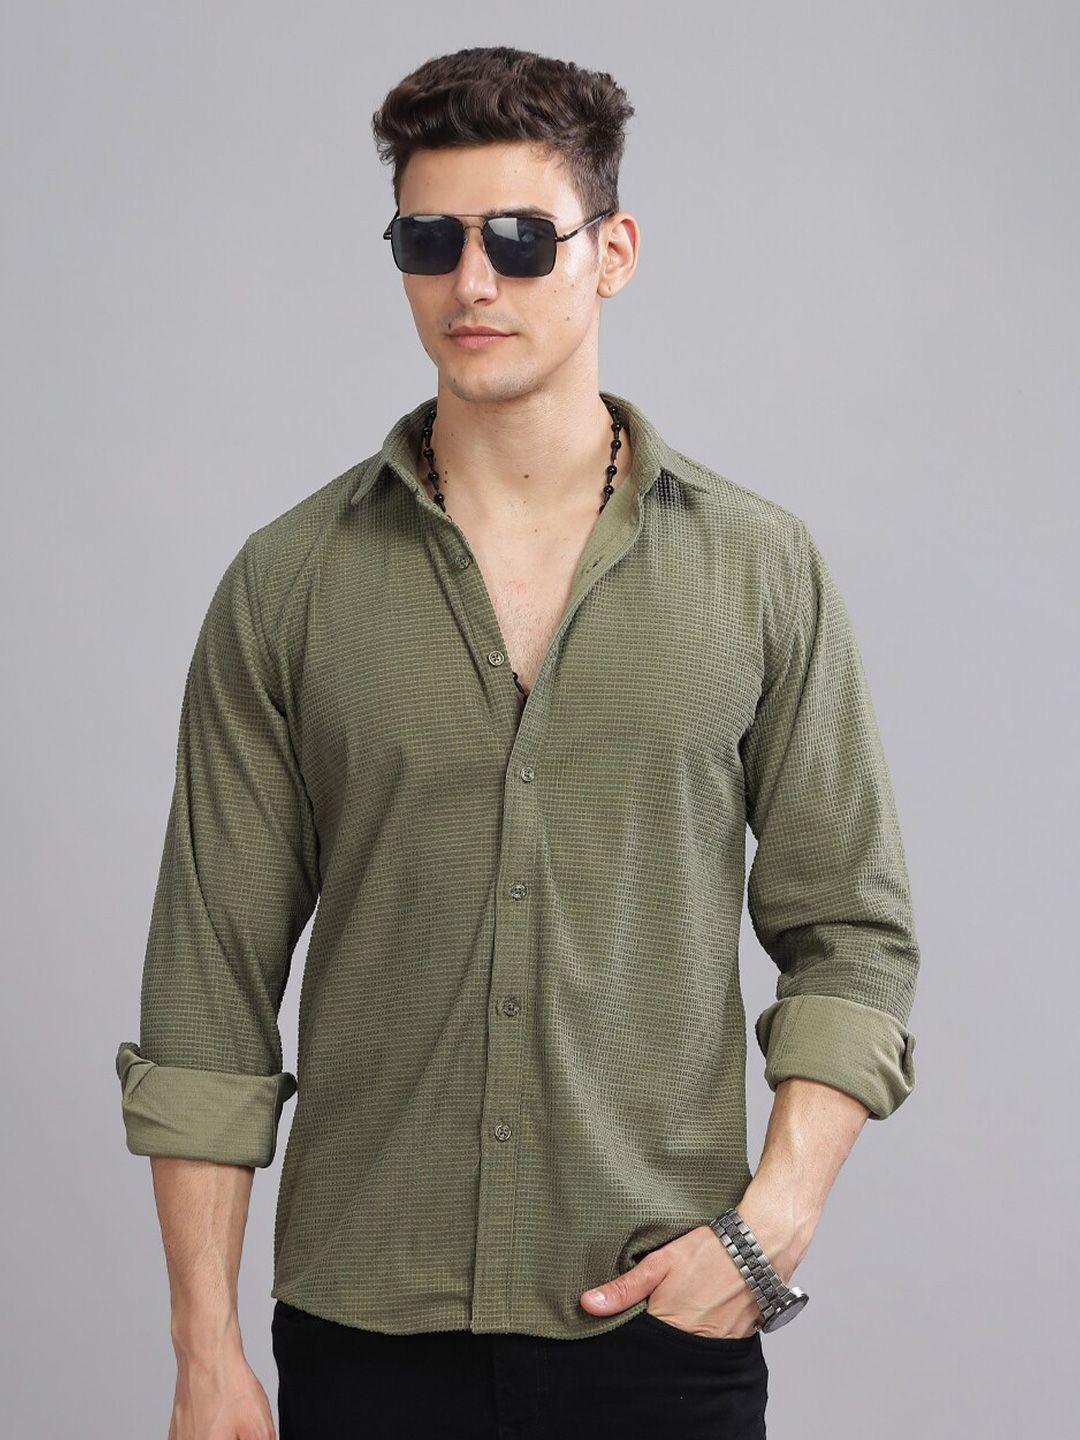 paul-street-standard-slim-fit-textured-wrinkle-free-corduroy-casual-shirt